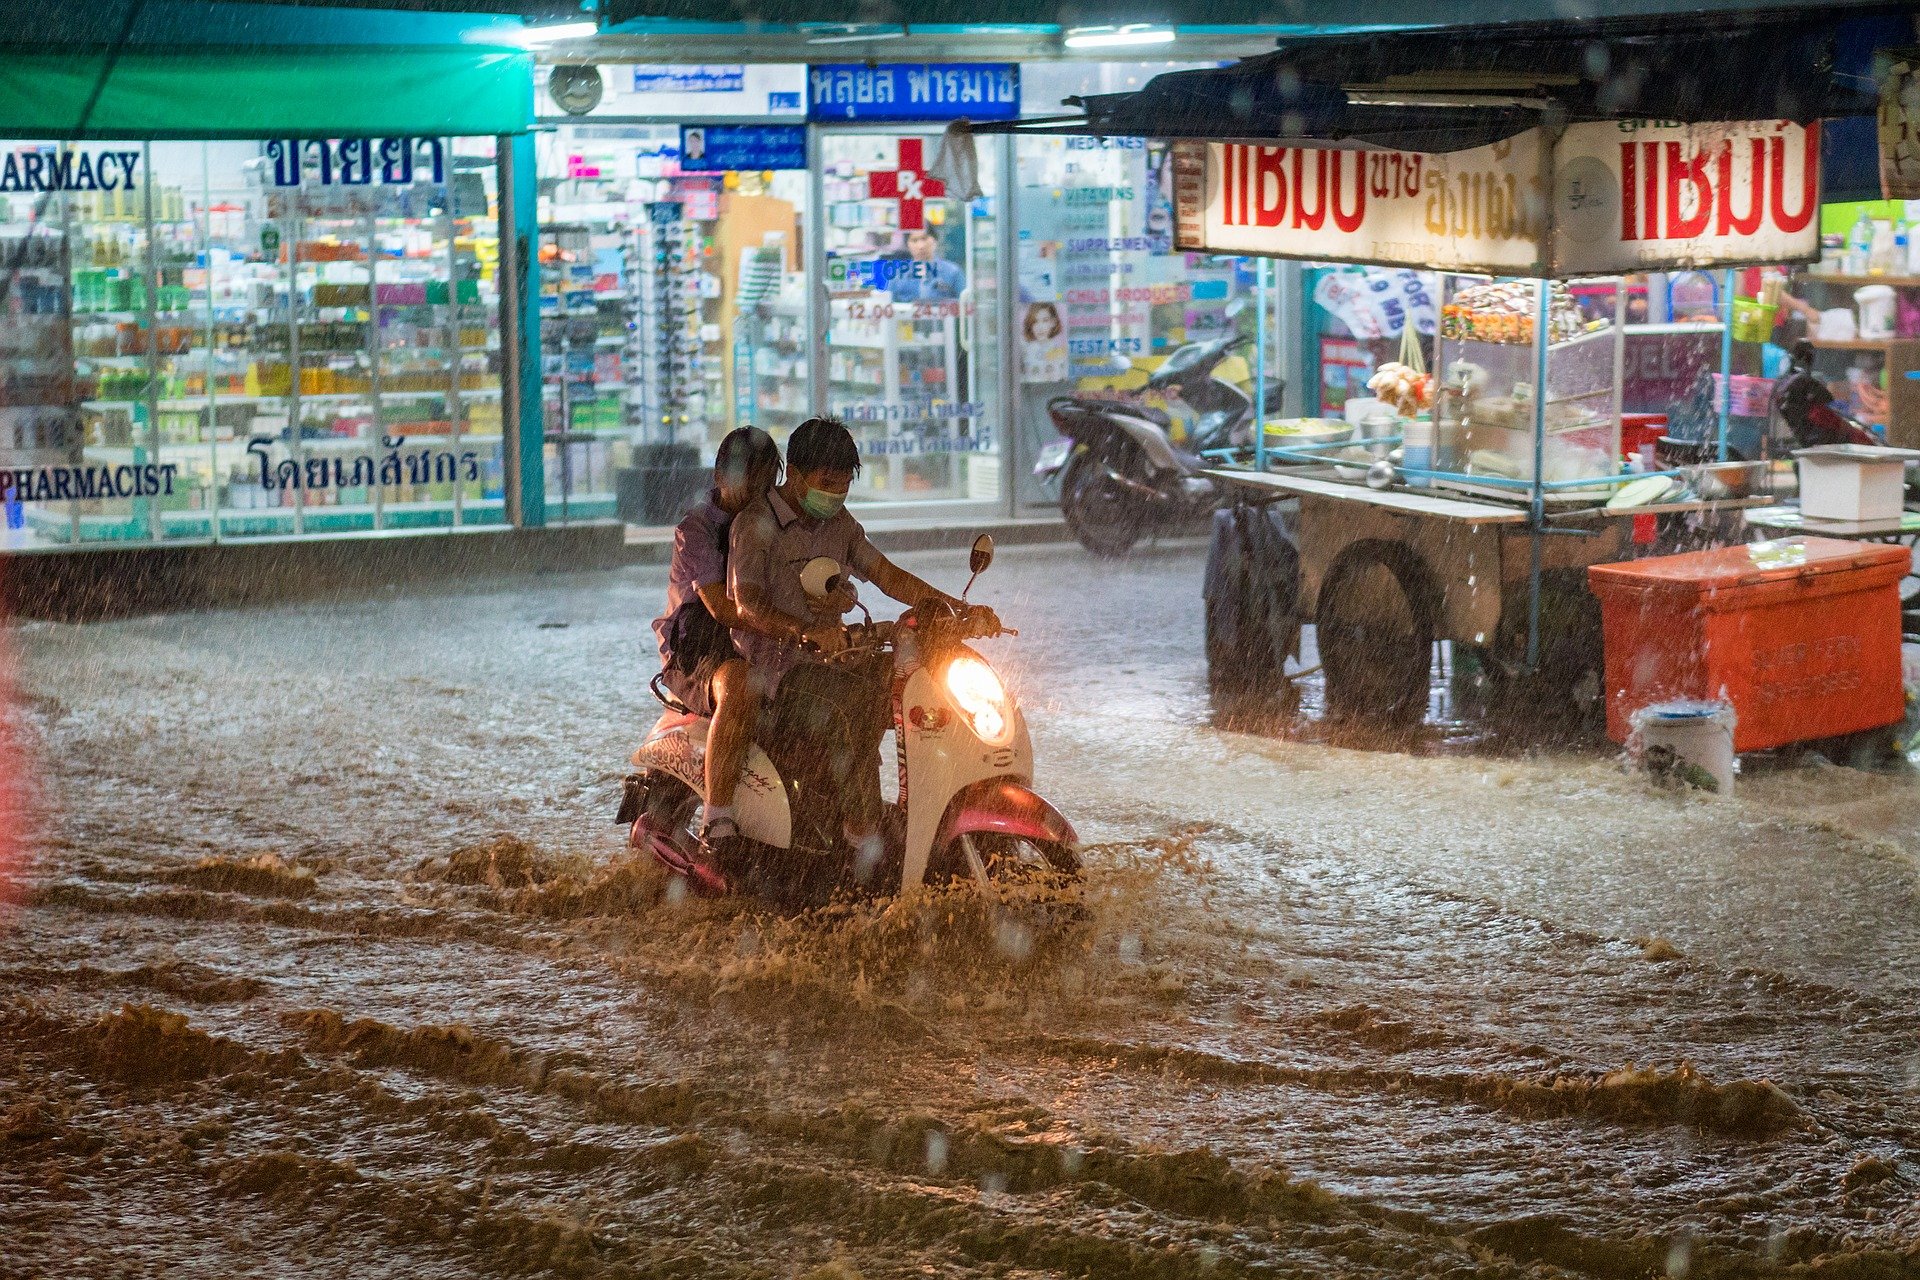 Überschwemmung in Thailand © www.motorbiketireshop.com